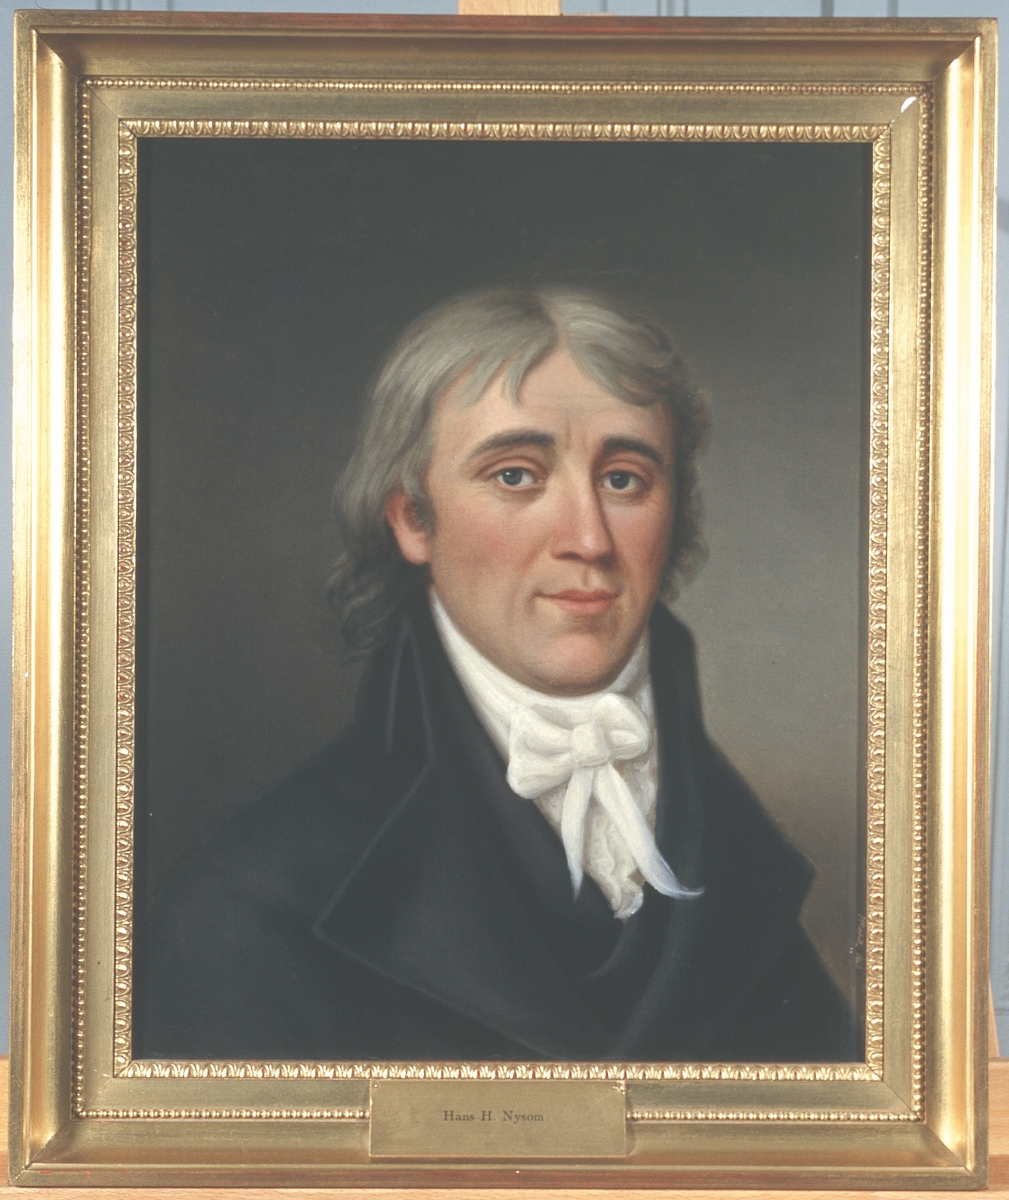 Portrett av Hans H. Nysom. Mørk drakt, hvit skjorte og halsbind.